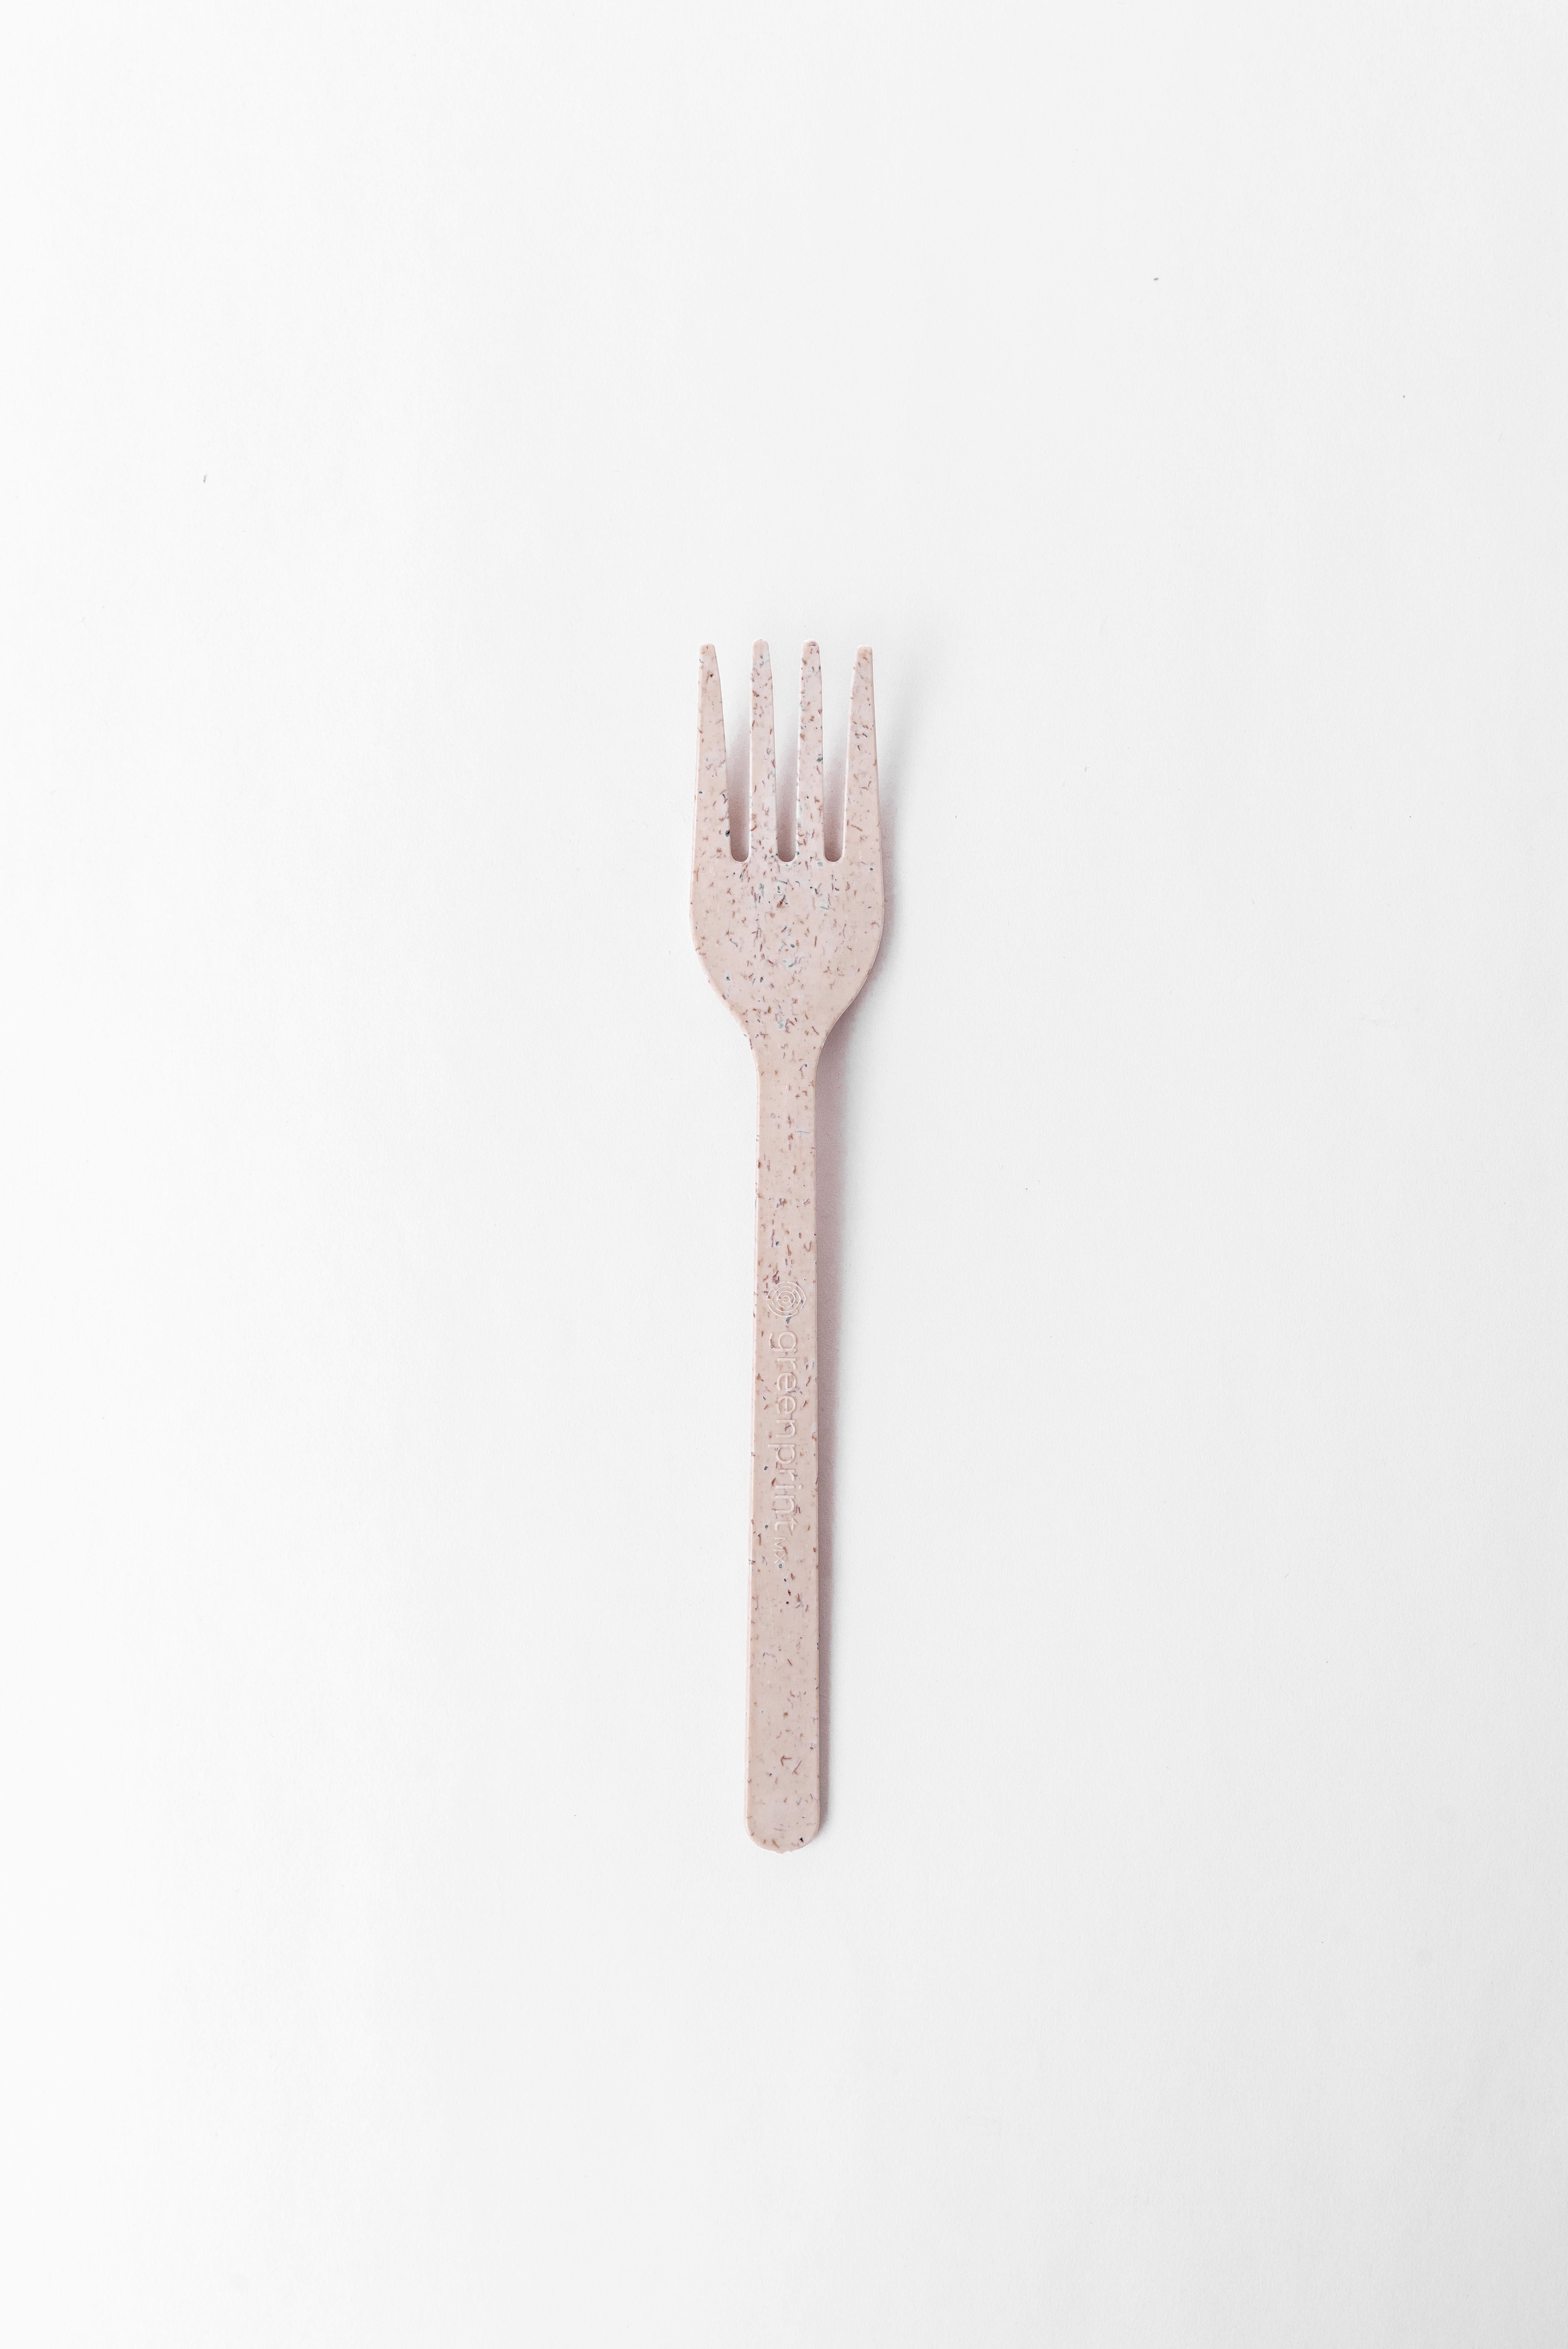 Agave based Forks - 1,000